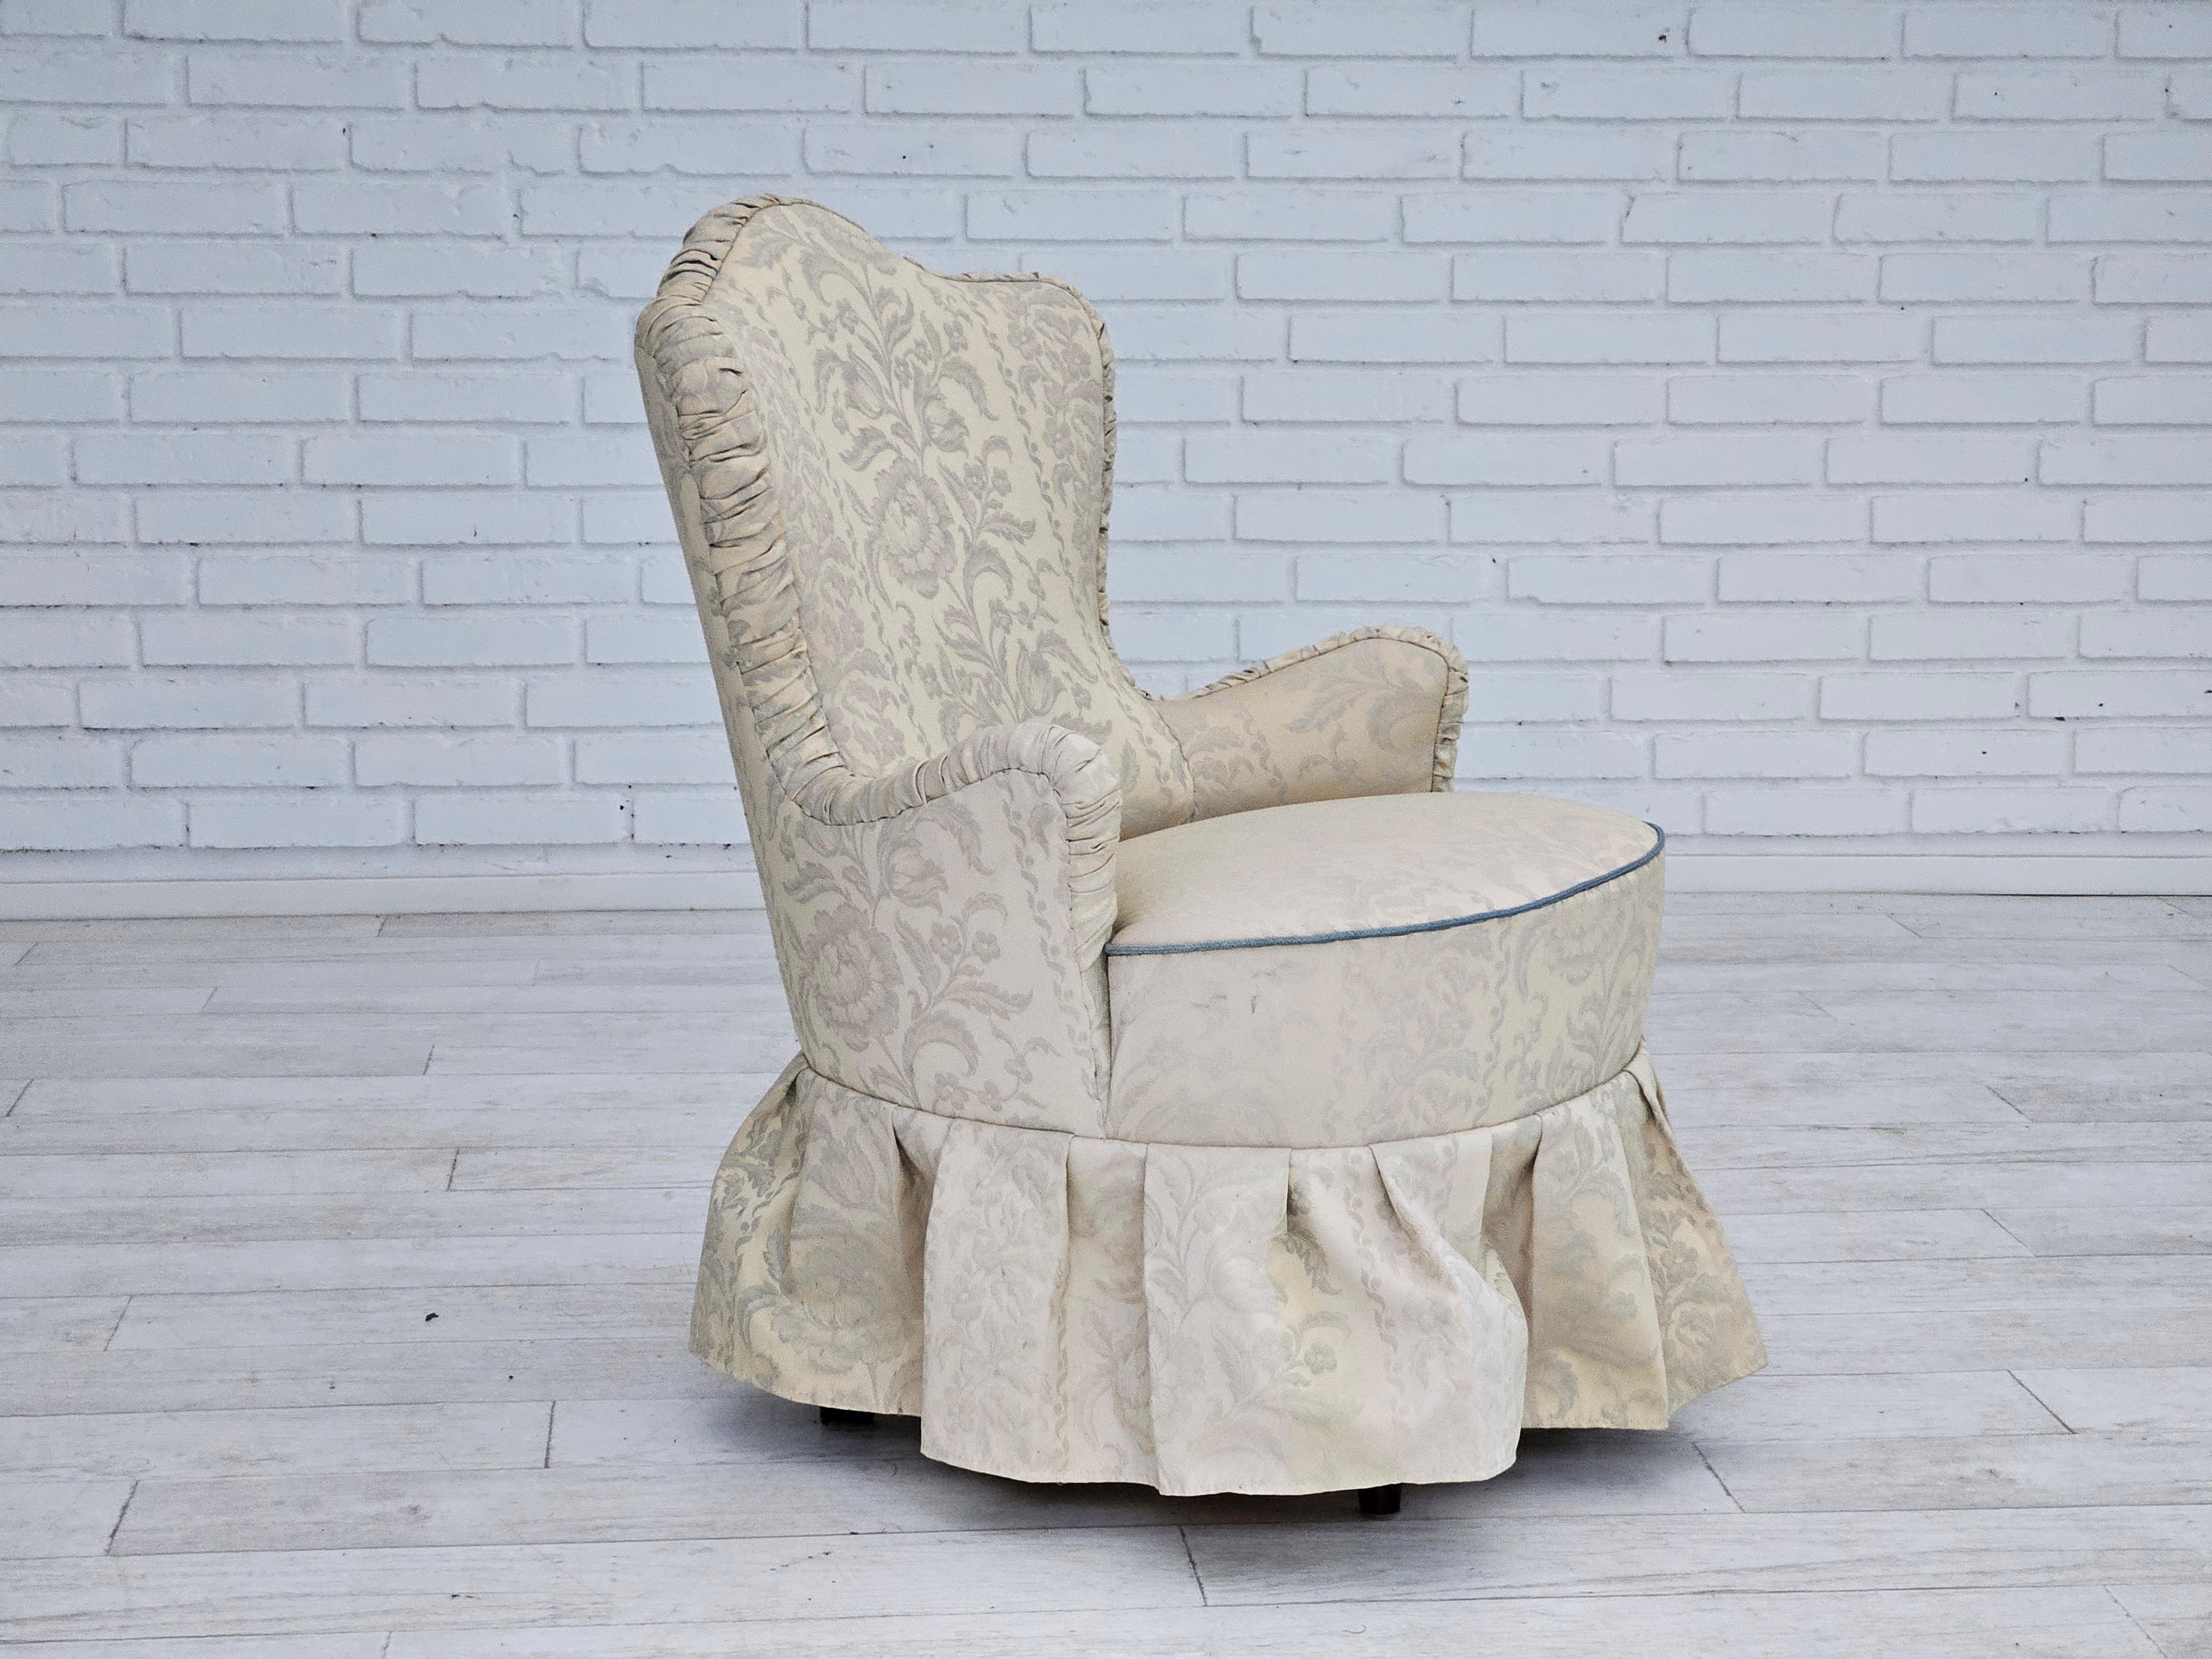 1950s, petit fauteuil danois reupholstered. Reupholstered in creamy white flowers fabric. Les ressorts d'origine du siège sont conservés. Pieds en bois de hêtre. Fabriqué par un fabricant de meubles danois vers 1950.